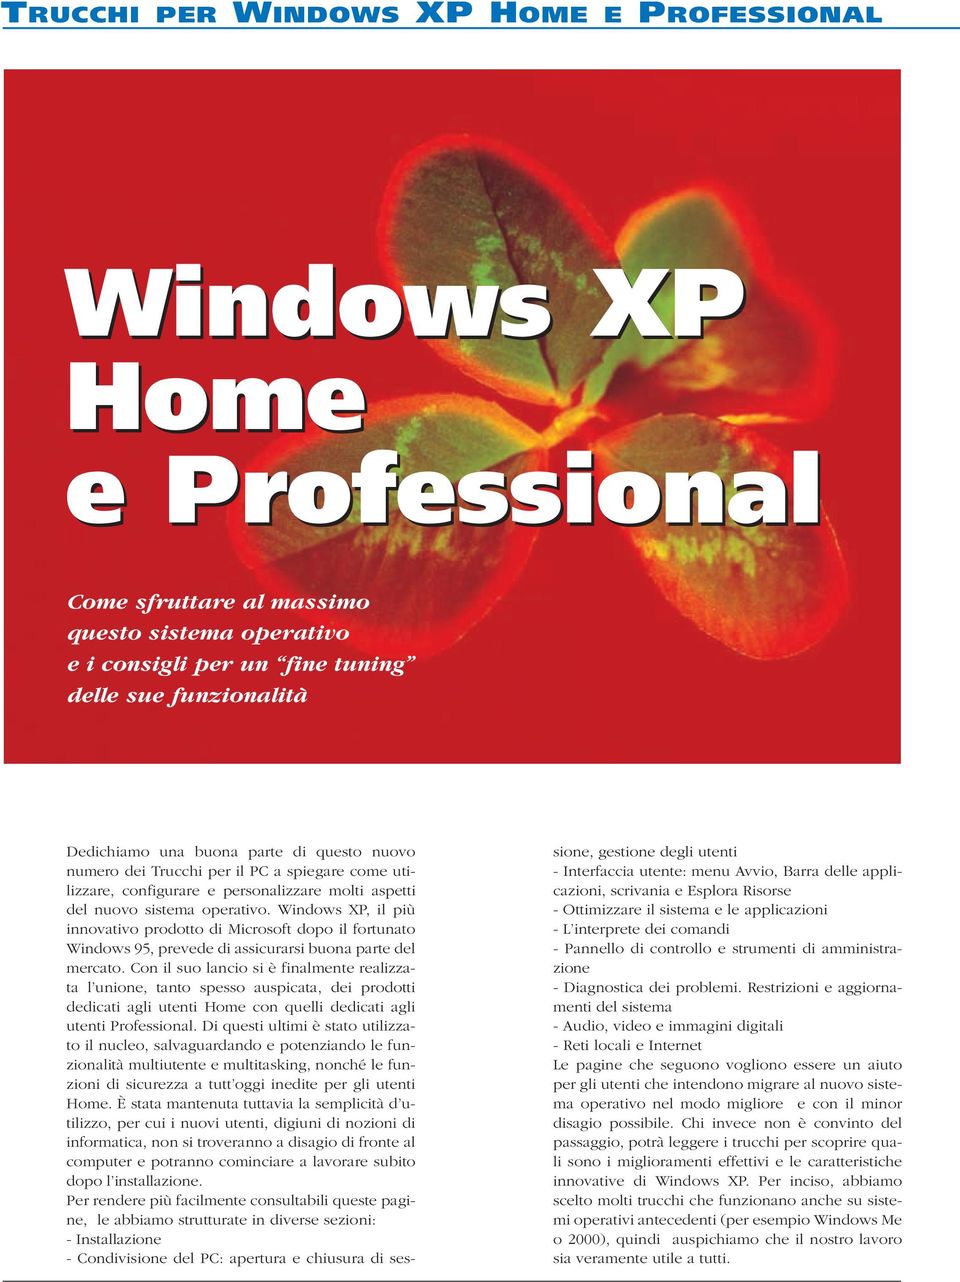 Windows XP, il più innovativo prodotto di Microsoft dopo il fortunato Windows 95, prevede di assicurarsi buona parte del mercato.